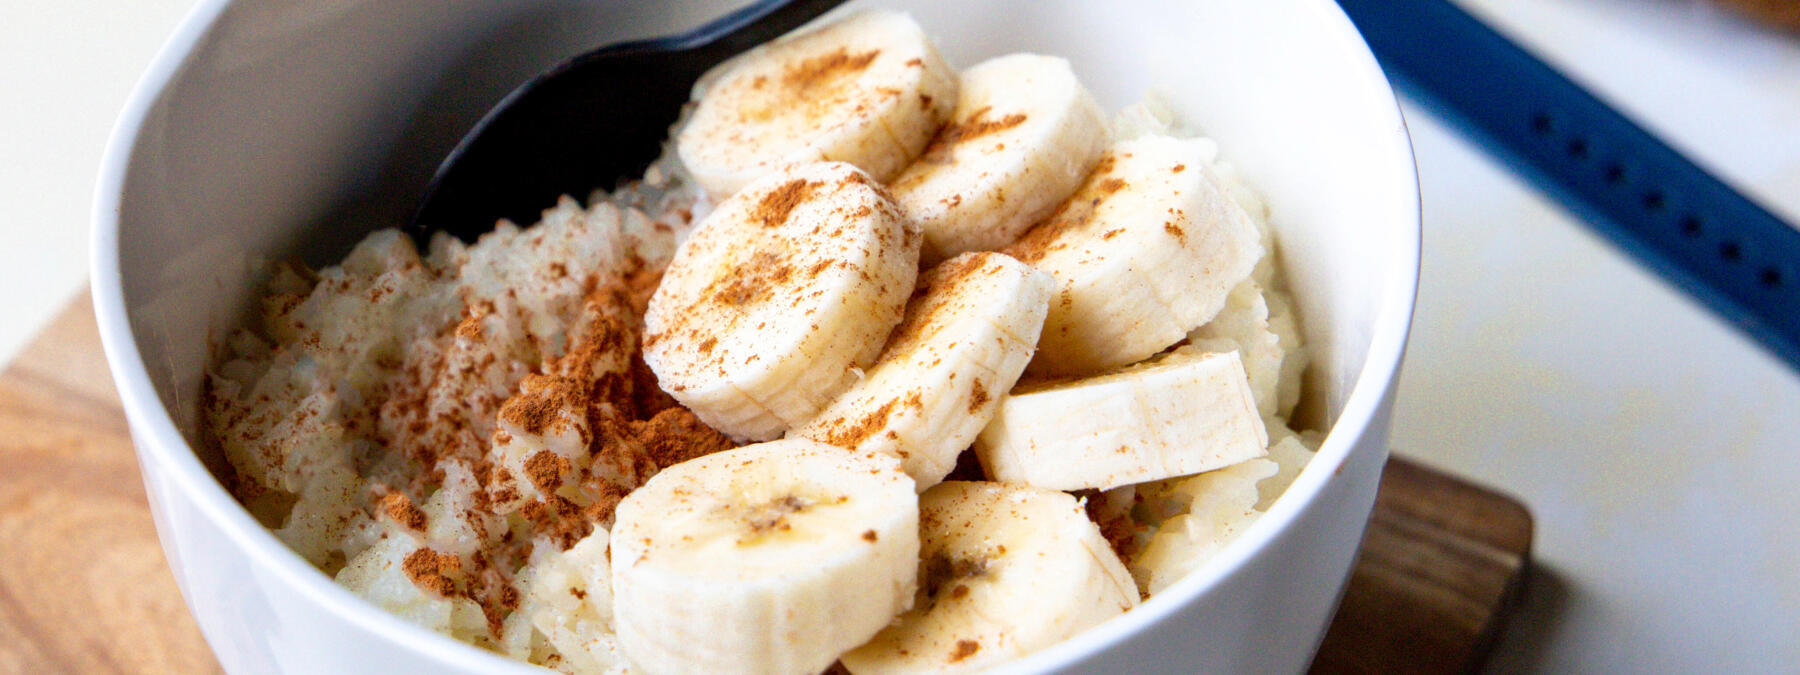 La banane : ses calories, ses bienfaits, et bien plus encore !